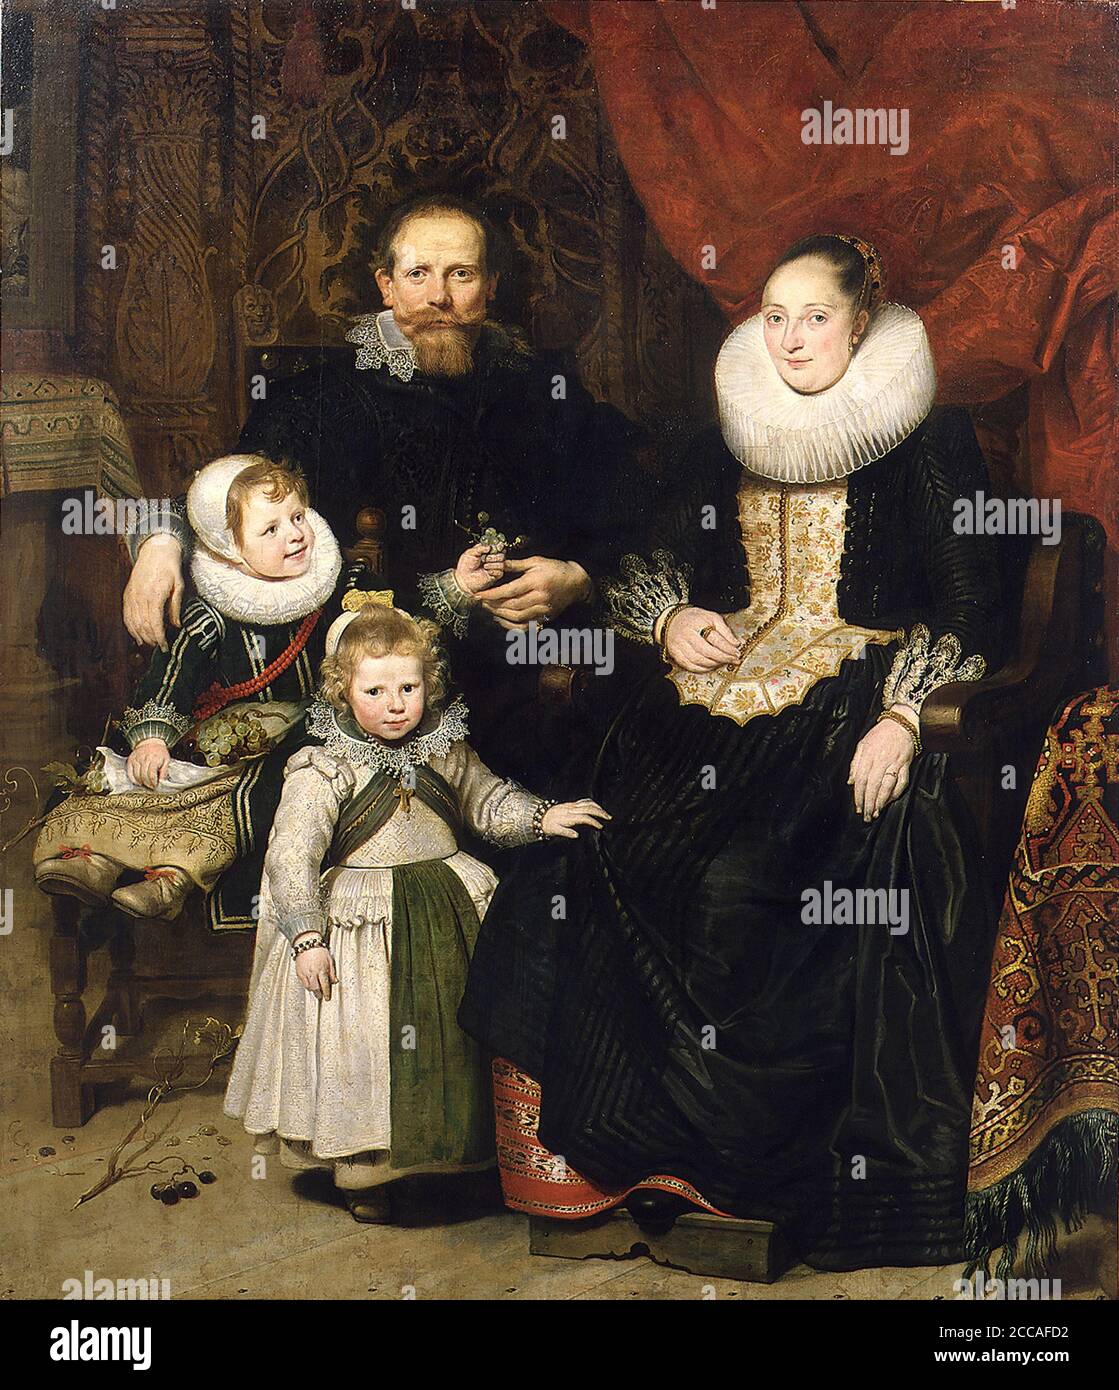 Self-Portrait with the Family. Museum: Musées royaux des Beaux-Arts de Belgique, Brussels. Author: CORNELIS DE VOS. Stock Photo